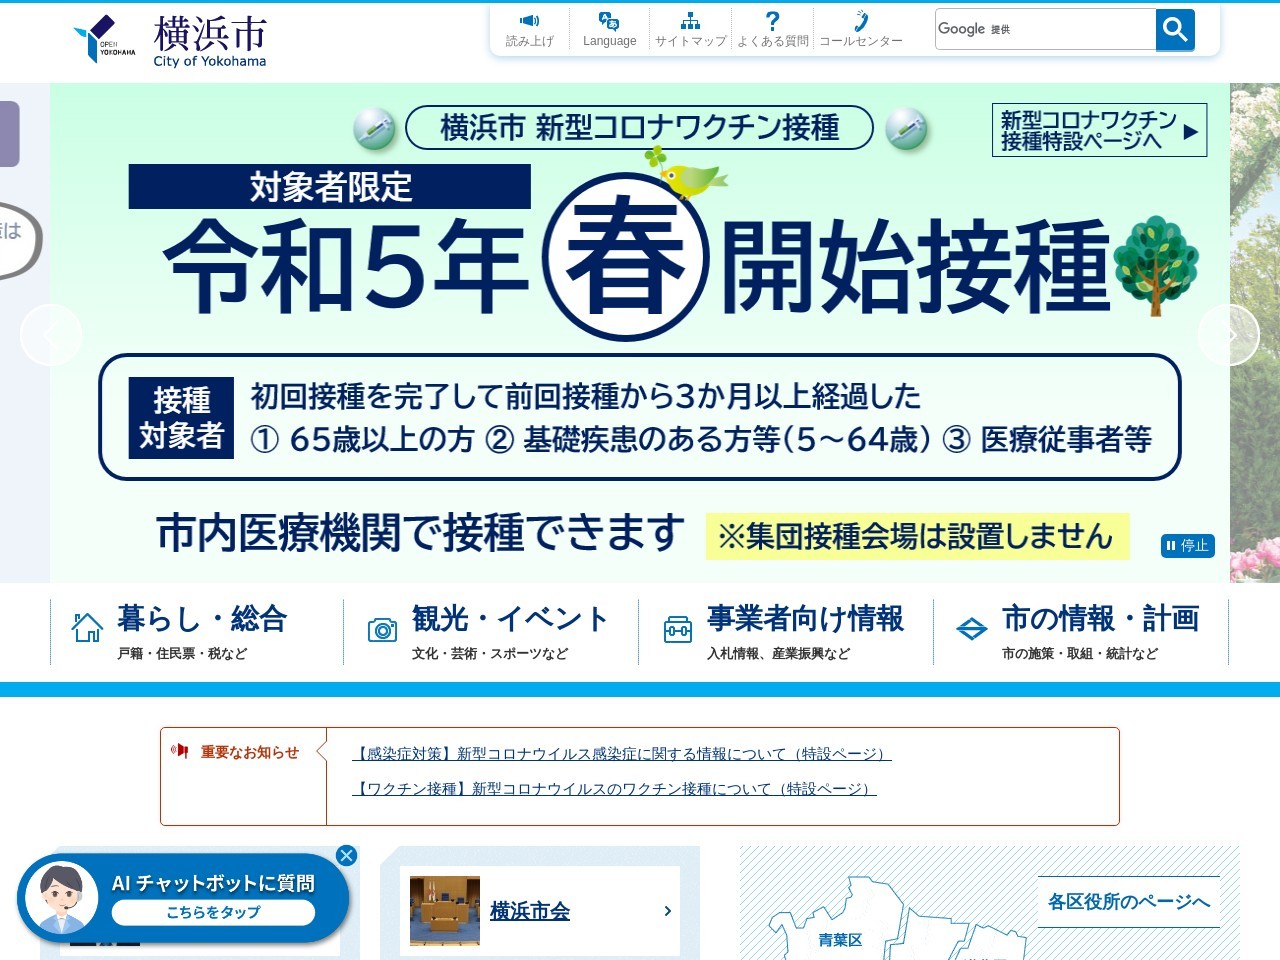 横浜市 西区役所 総務部 戸籍課 登録係のクチコミ・評判とホームページ